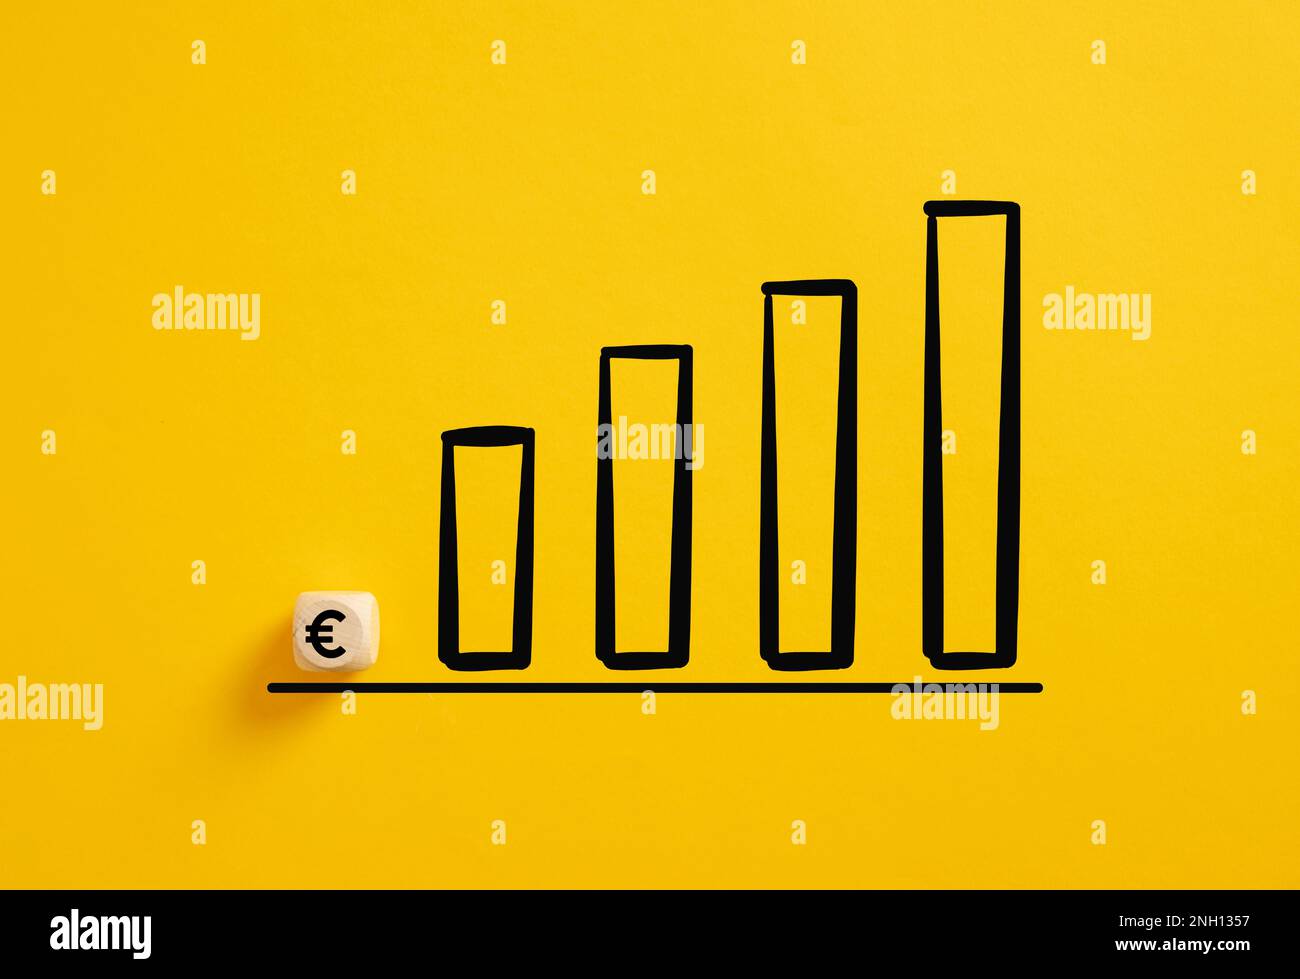 Concetto di crescita del tasso di cambio dell'euro. Aumento dei profitti aziendali. Simbolo dell'euro su un cubo di legno con un grafico ascendente. Foto Stock